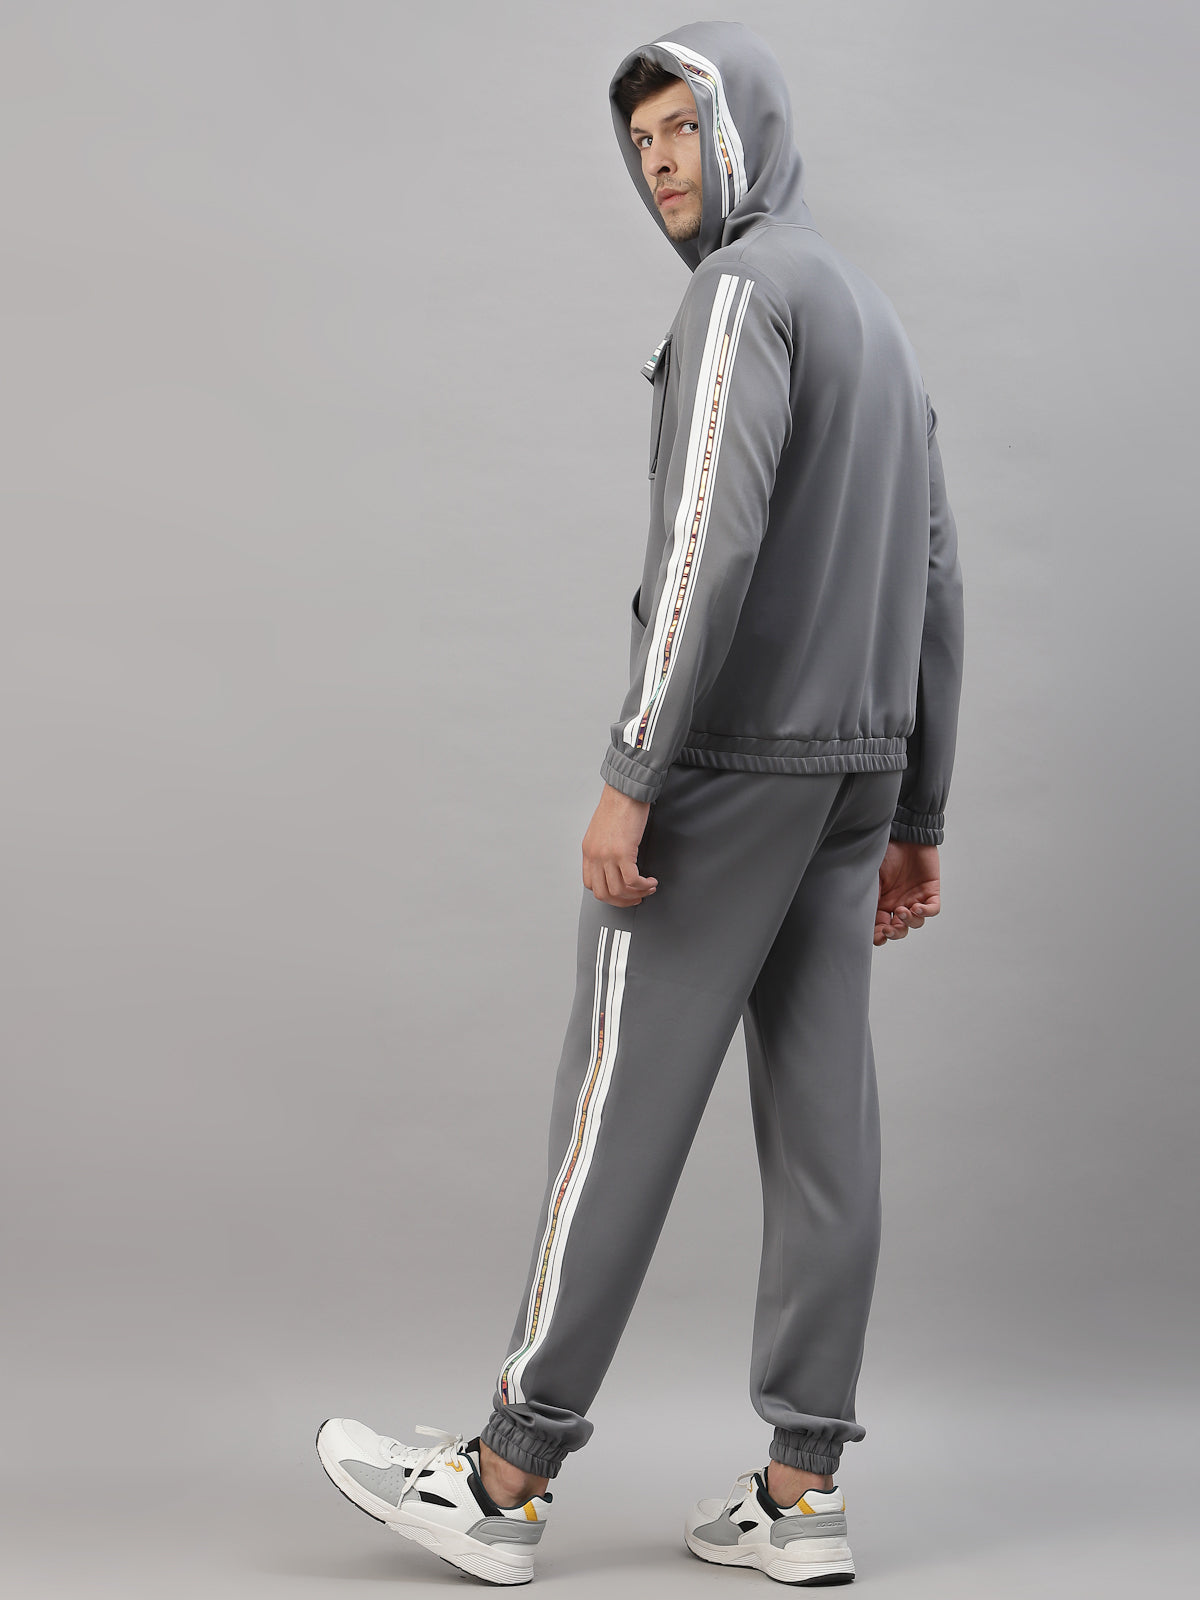 Grey Men's designer tracksuit by JUST BILLI, luxury athleisure wear online